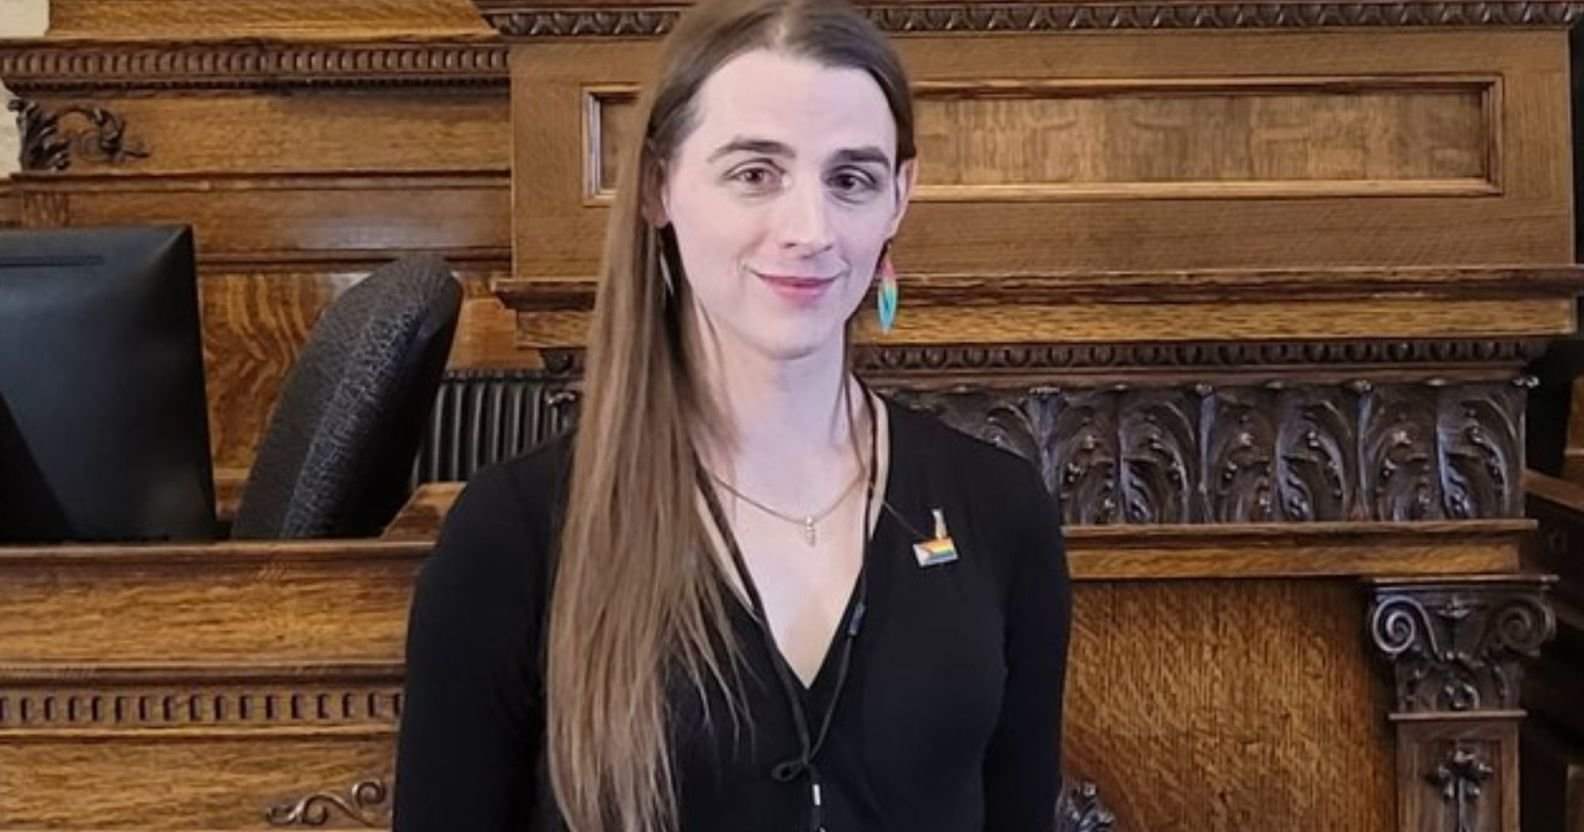 بالفيديو - نائبة متحولة جنسيا تُمنع من الكلام في برلمان ولاية أميركية